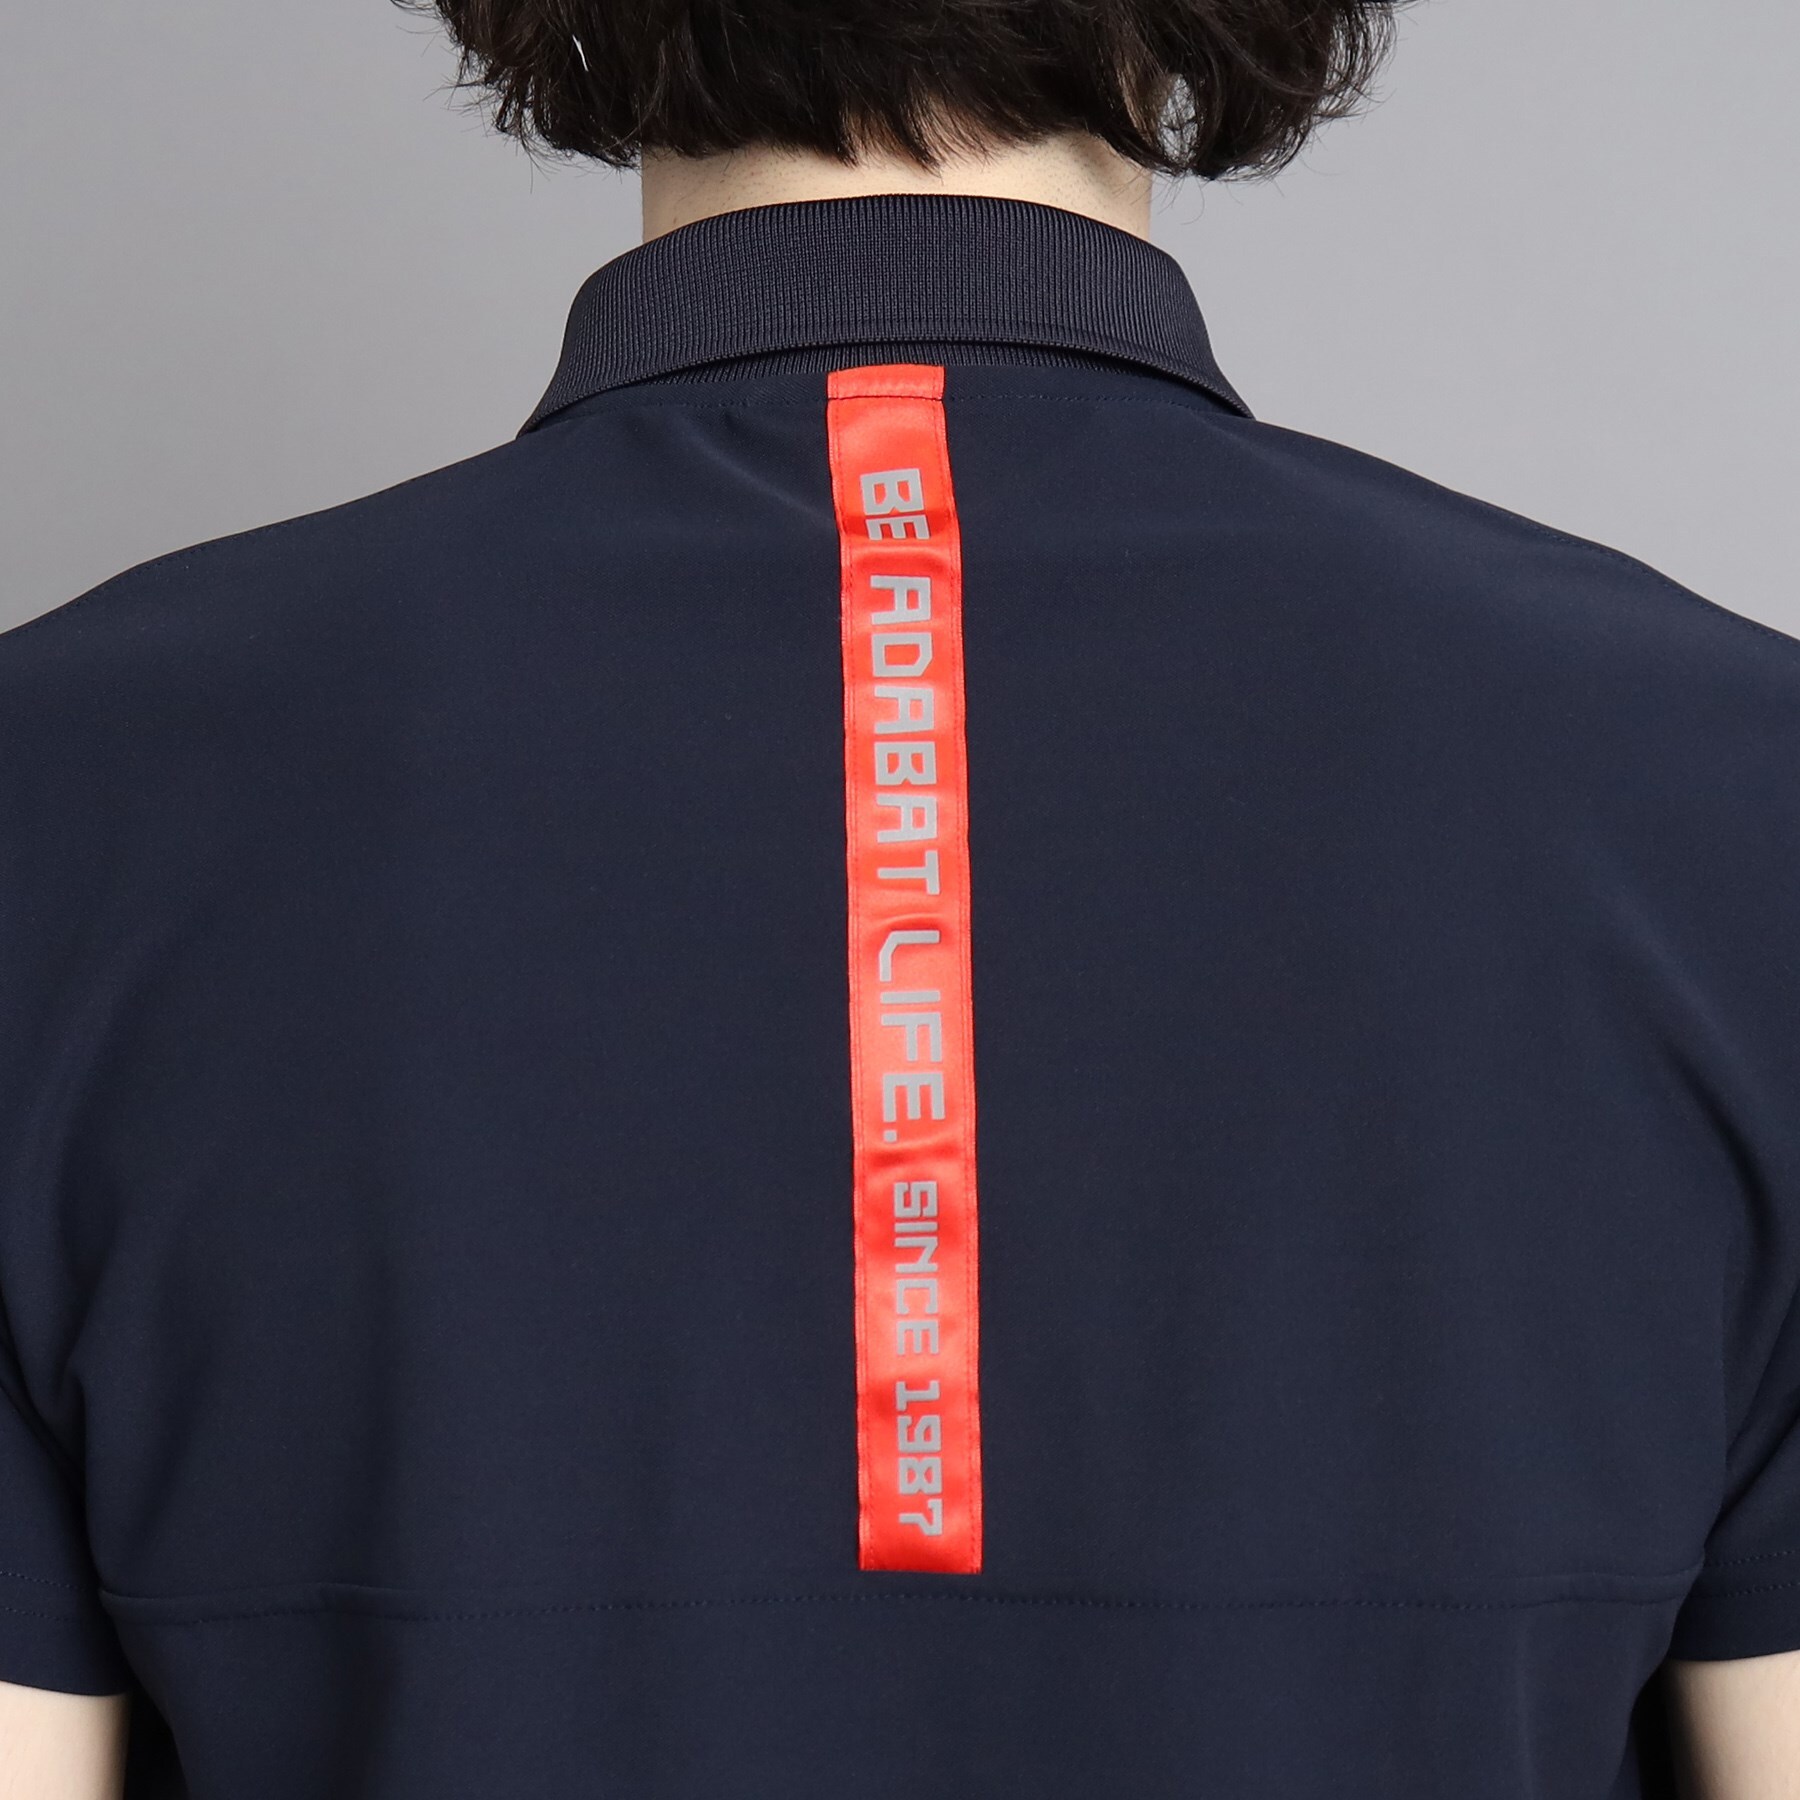 アダバット(メンズ)(adabat(Men))の【日本製】ロゴデザイン ハーフジップ半袖プルオーバー18